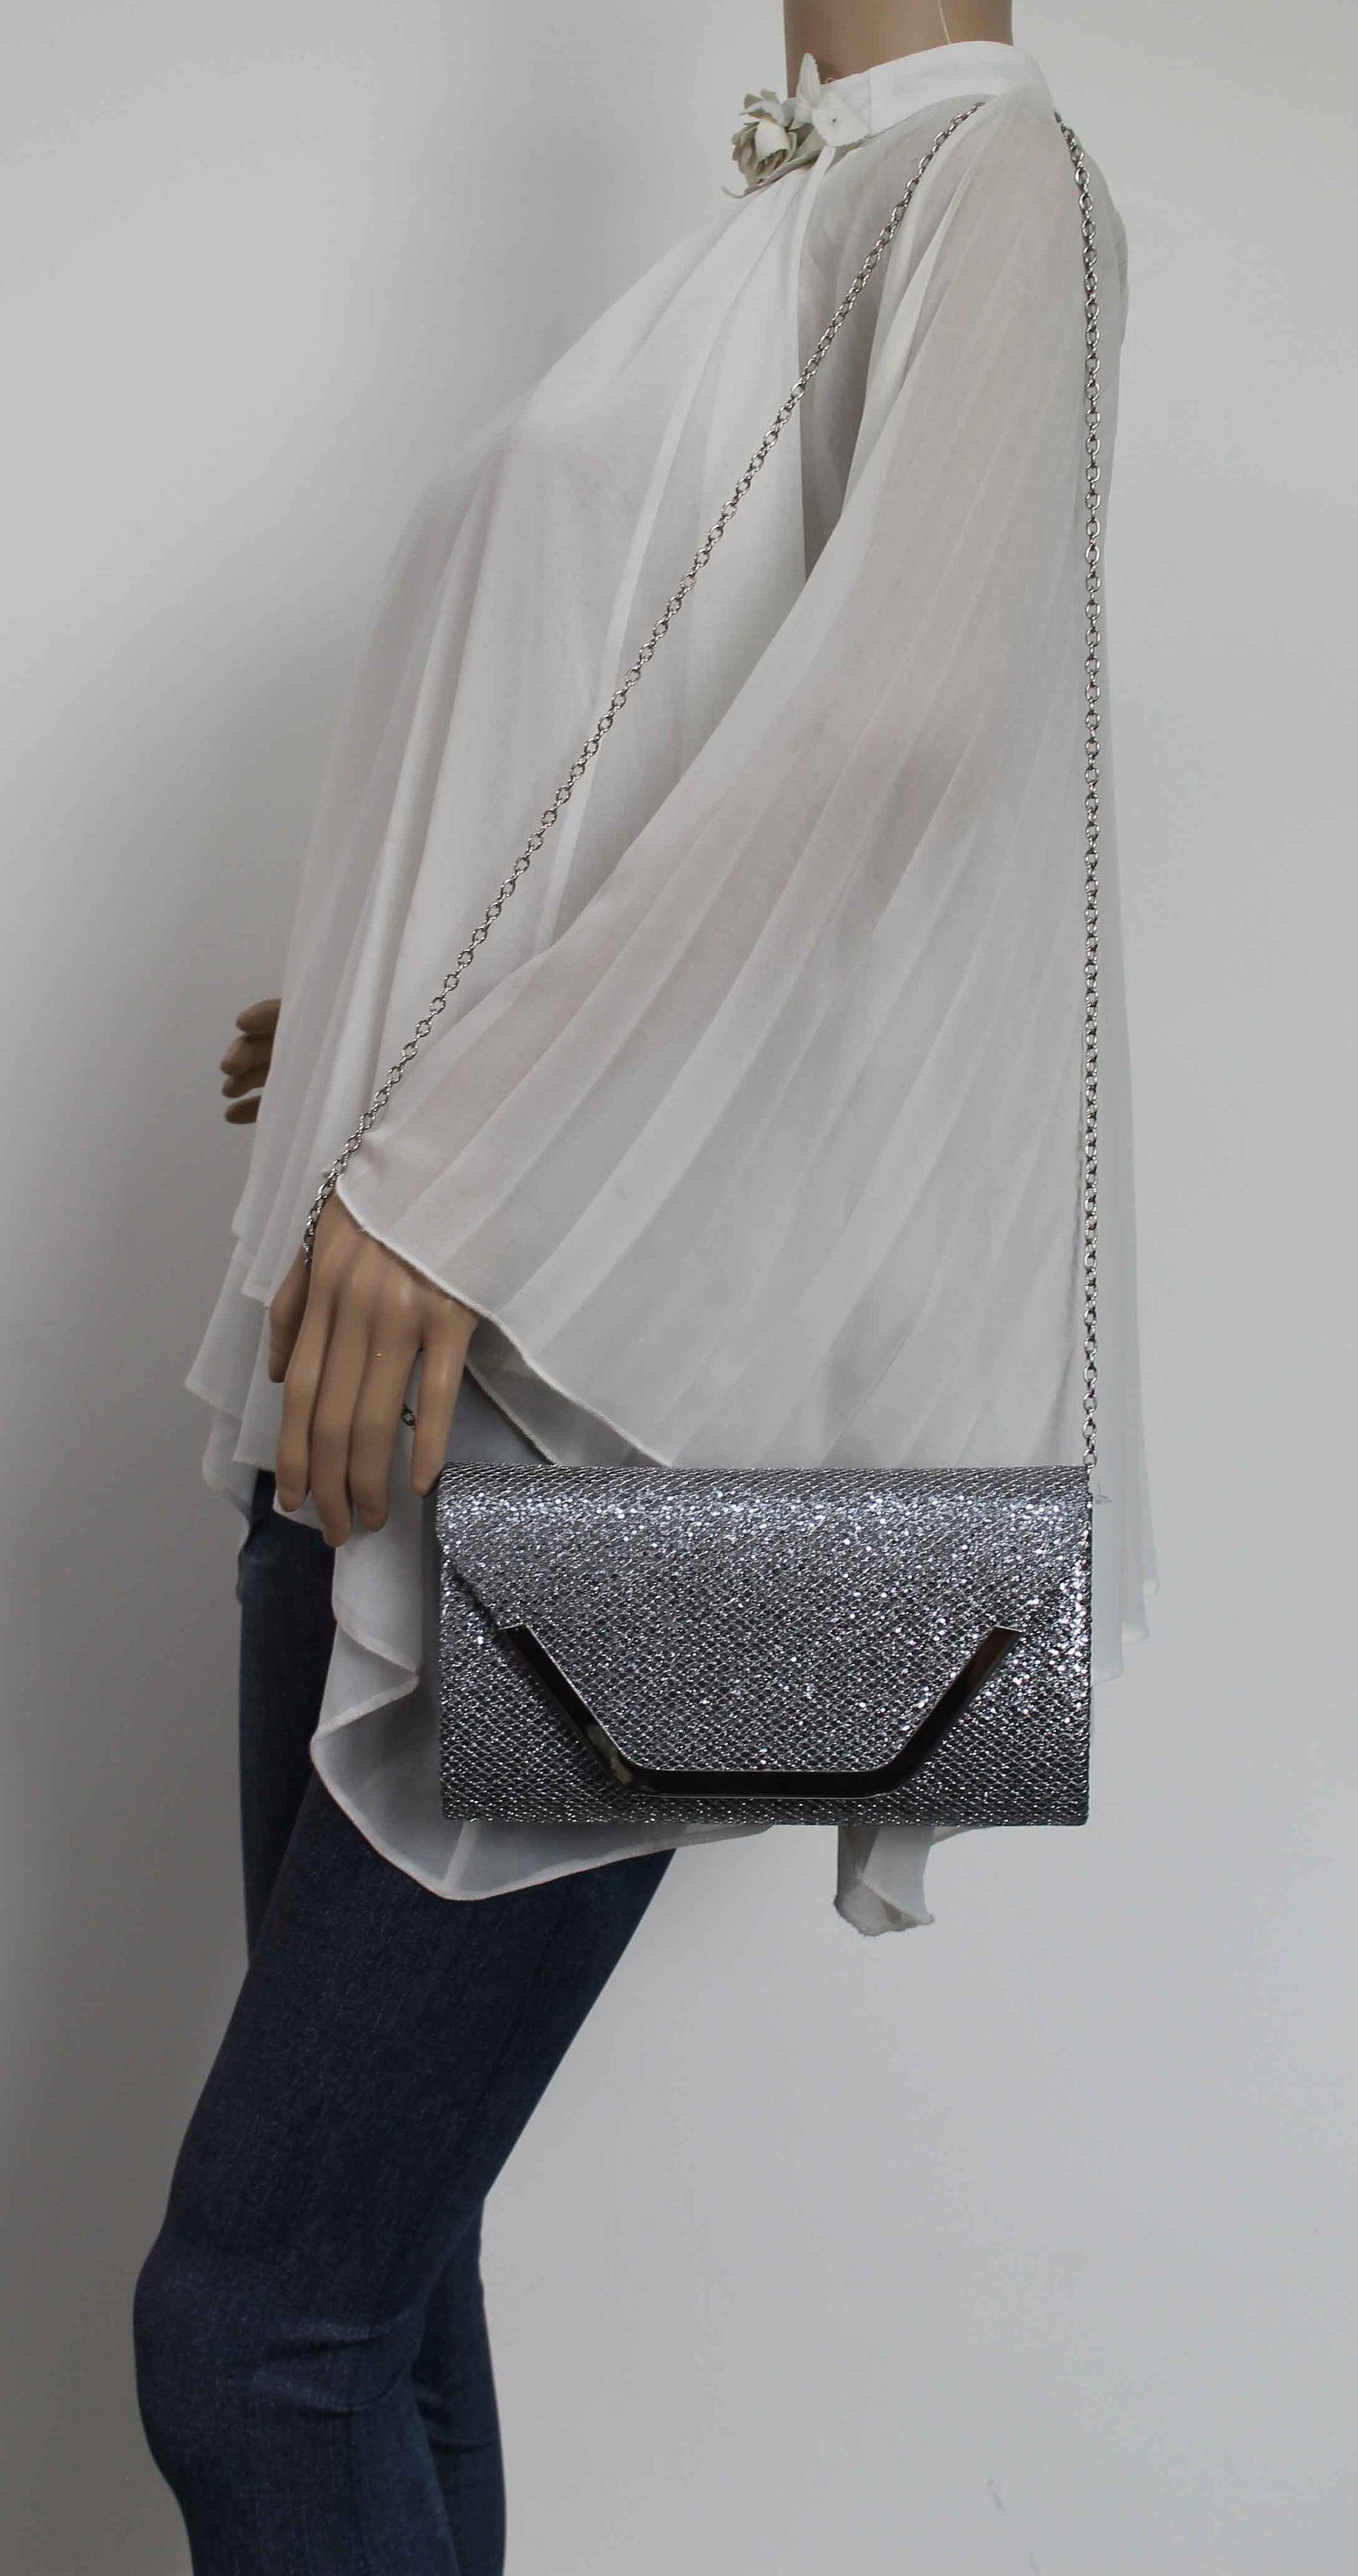 SWANKYSWANS Kamila Clutch Bag Grey Cute Cheap Clutch Bag For Weddings School and Work